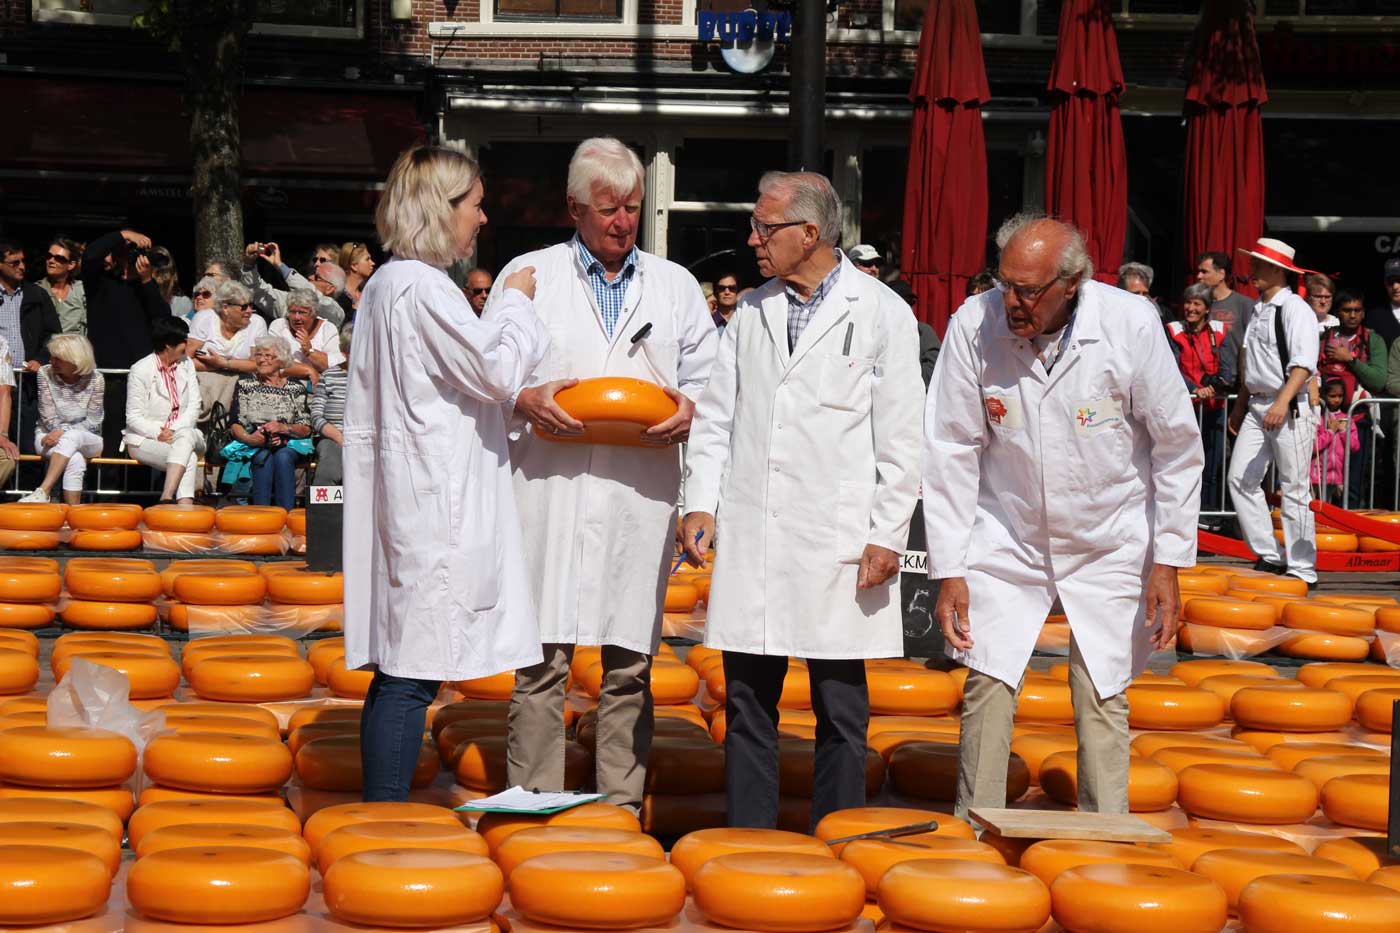 По центру площади с сырами стоят 4 эксперта по сыру в белых халатах и осматривают одну из головок.